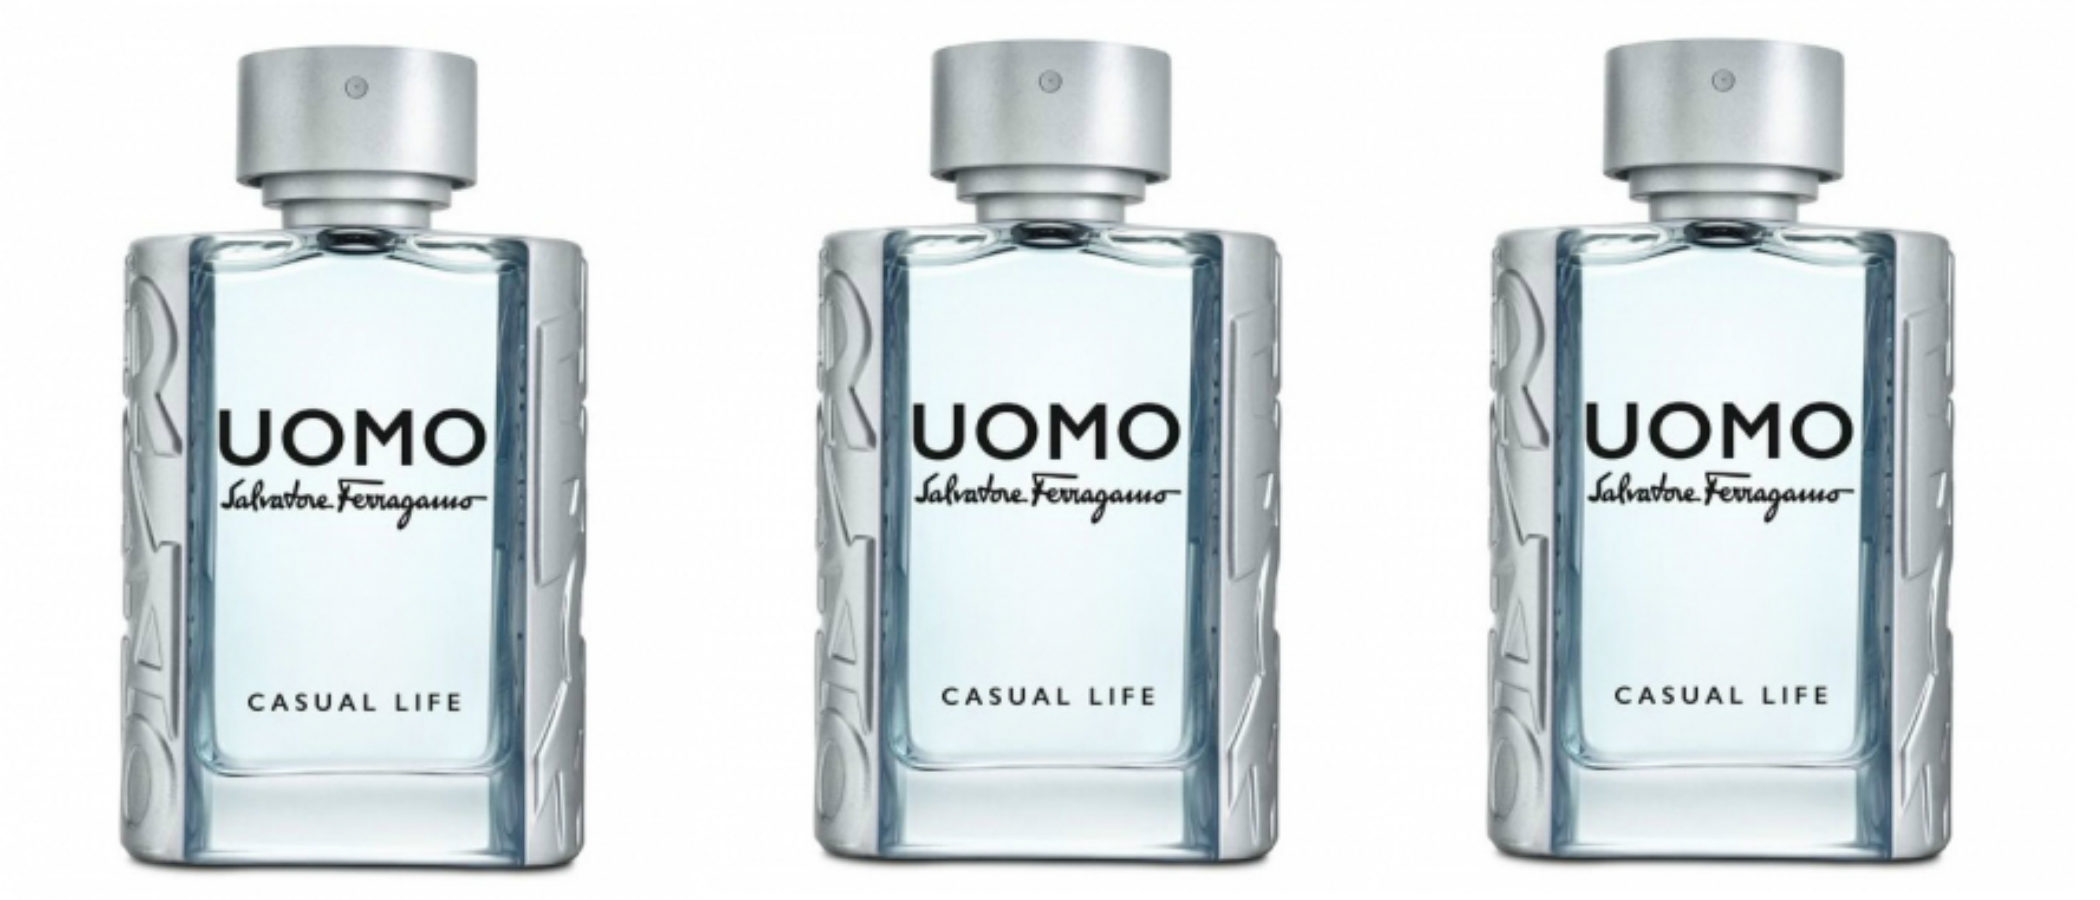 'UOMO Casual Life', el nuevo perfume de Salvatore Ferragamo